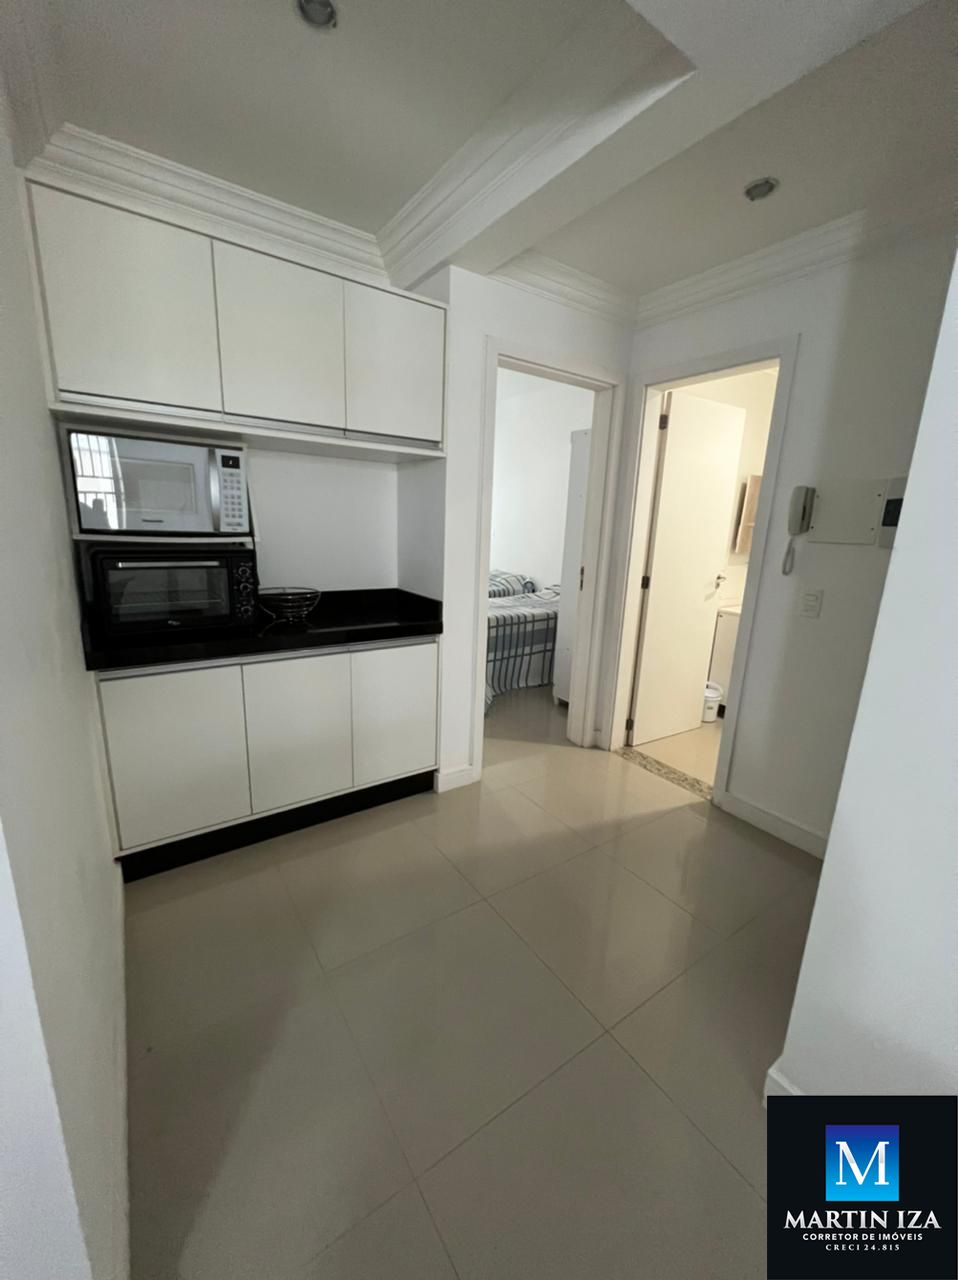 Apartamento com 2 Dormitórios para alugar, 55 m² por R$ 180,00